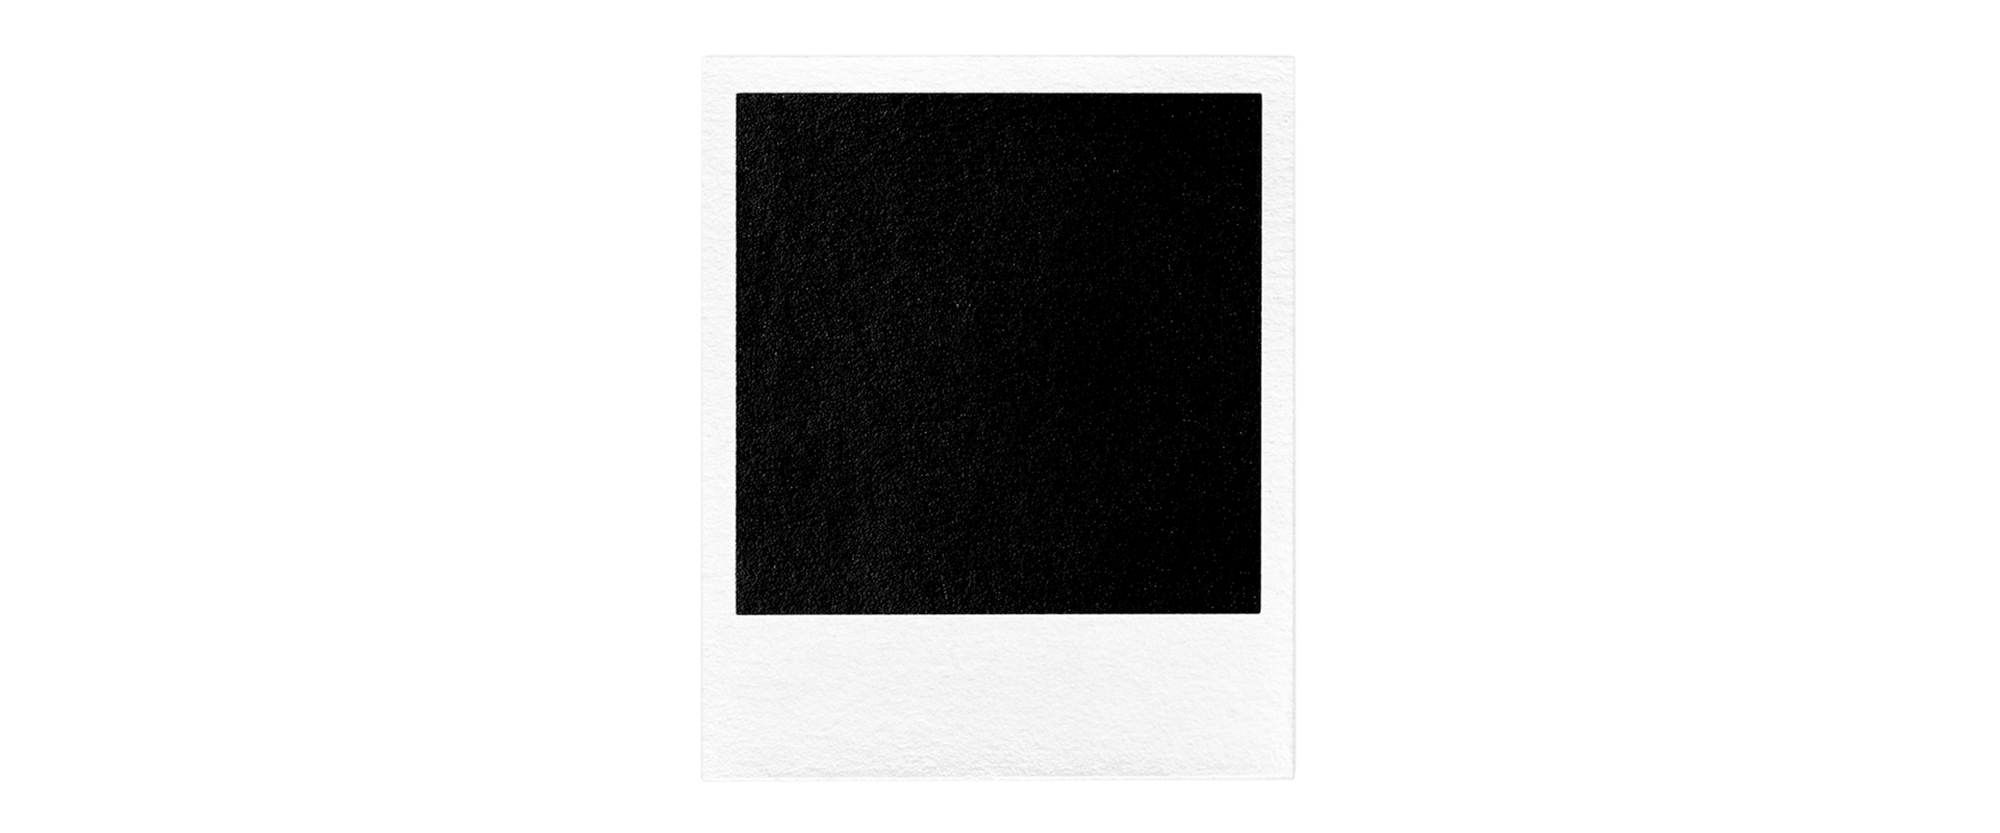 Polaroid - 2016, Schichtsiebdruck auf Papier, 20 x 20 cm